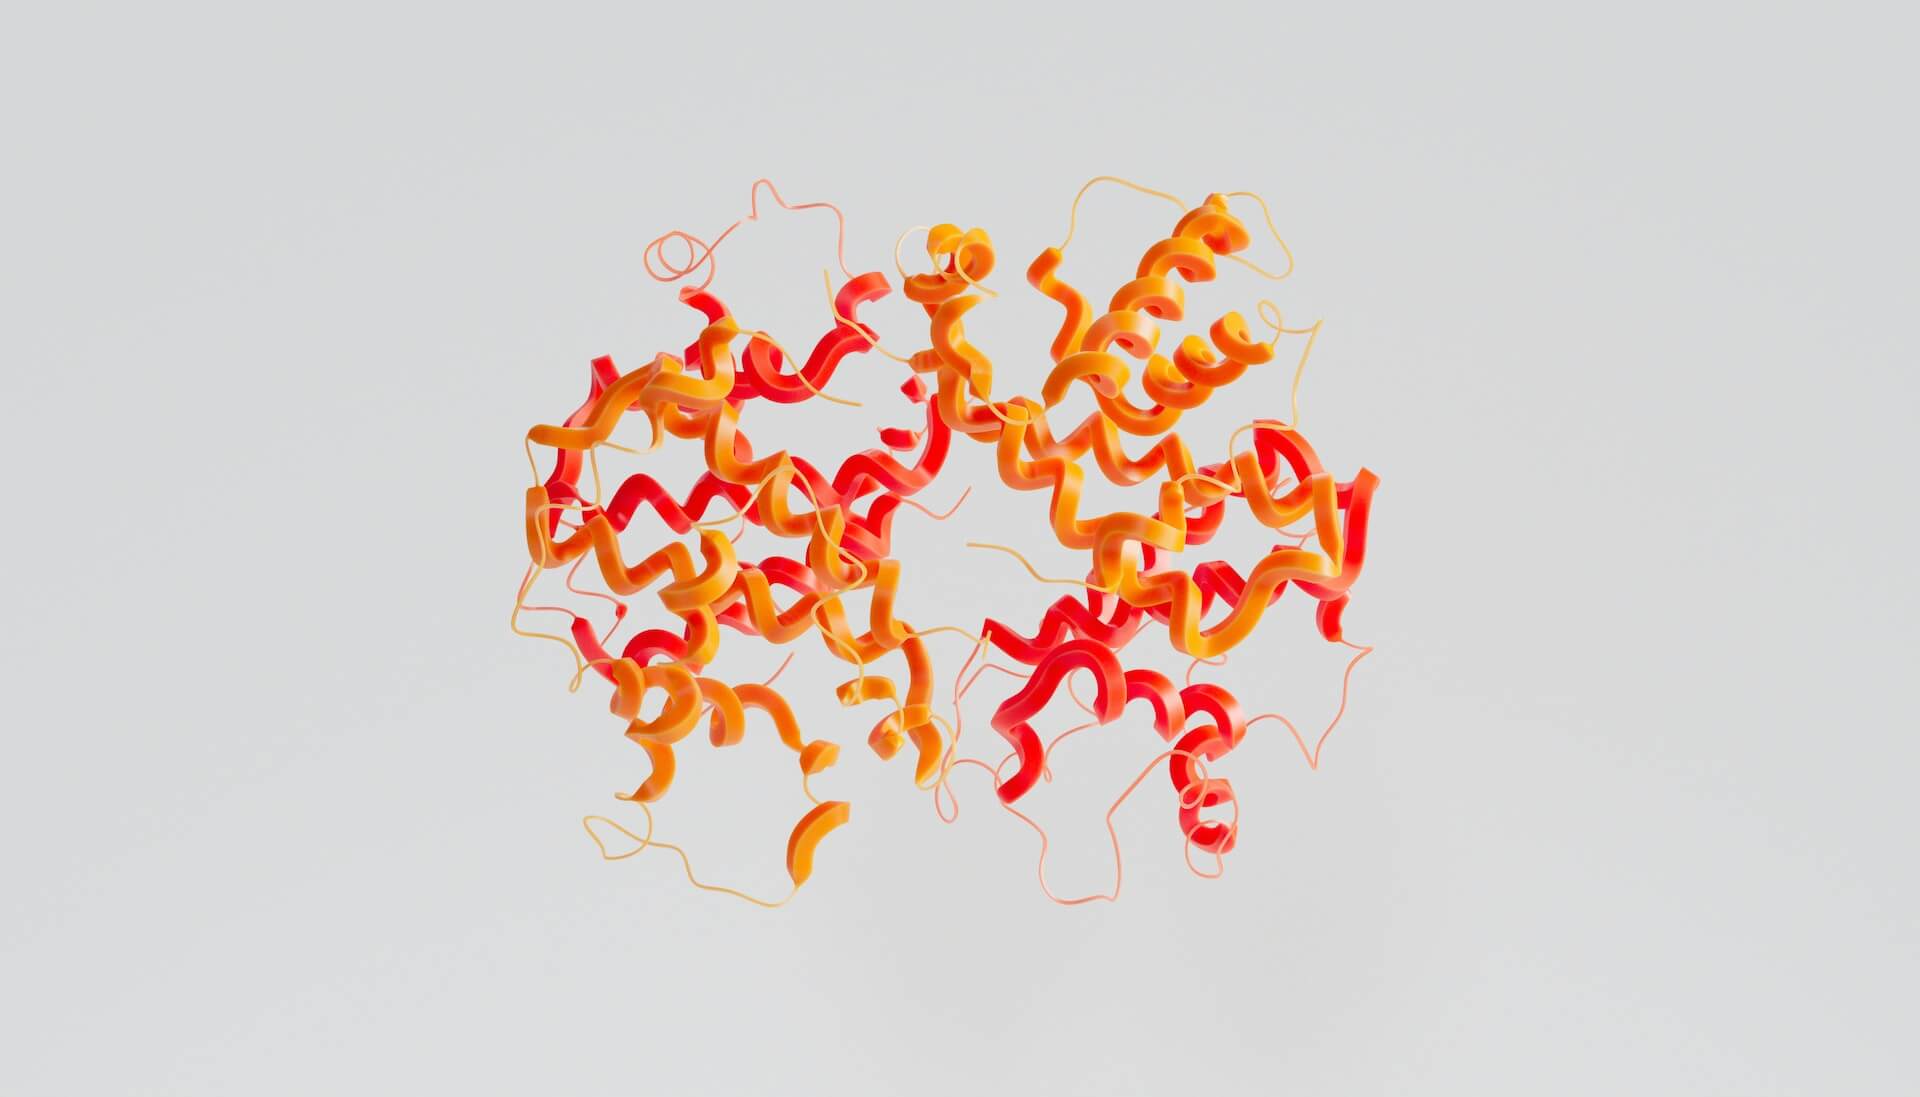 Filamenti di proteine di colore giallo e rosso.